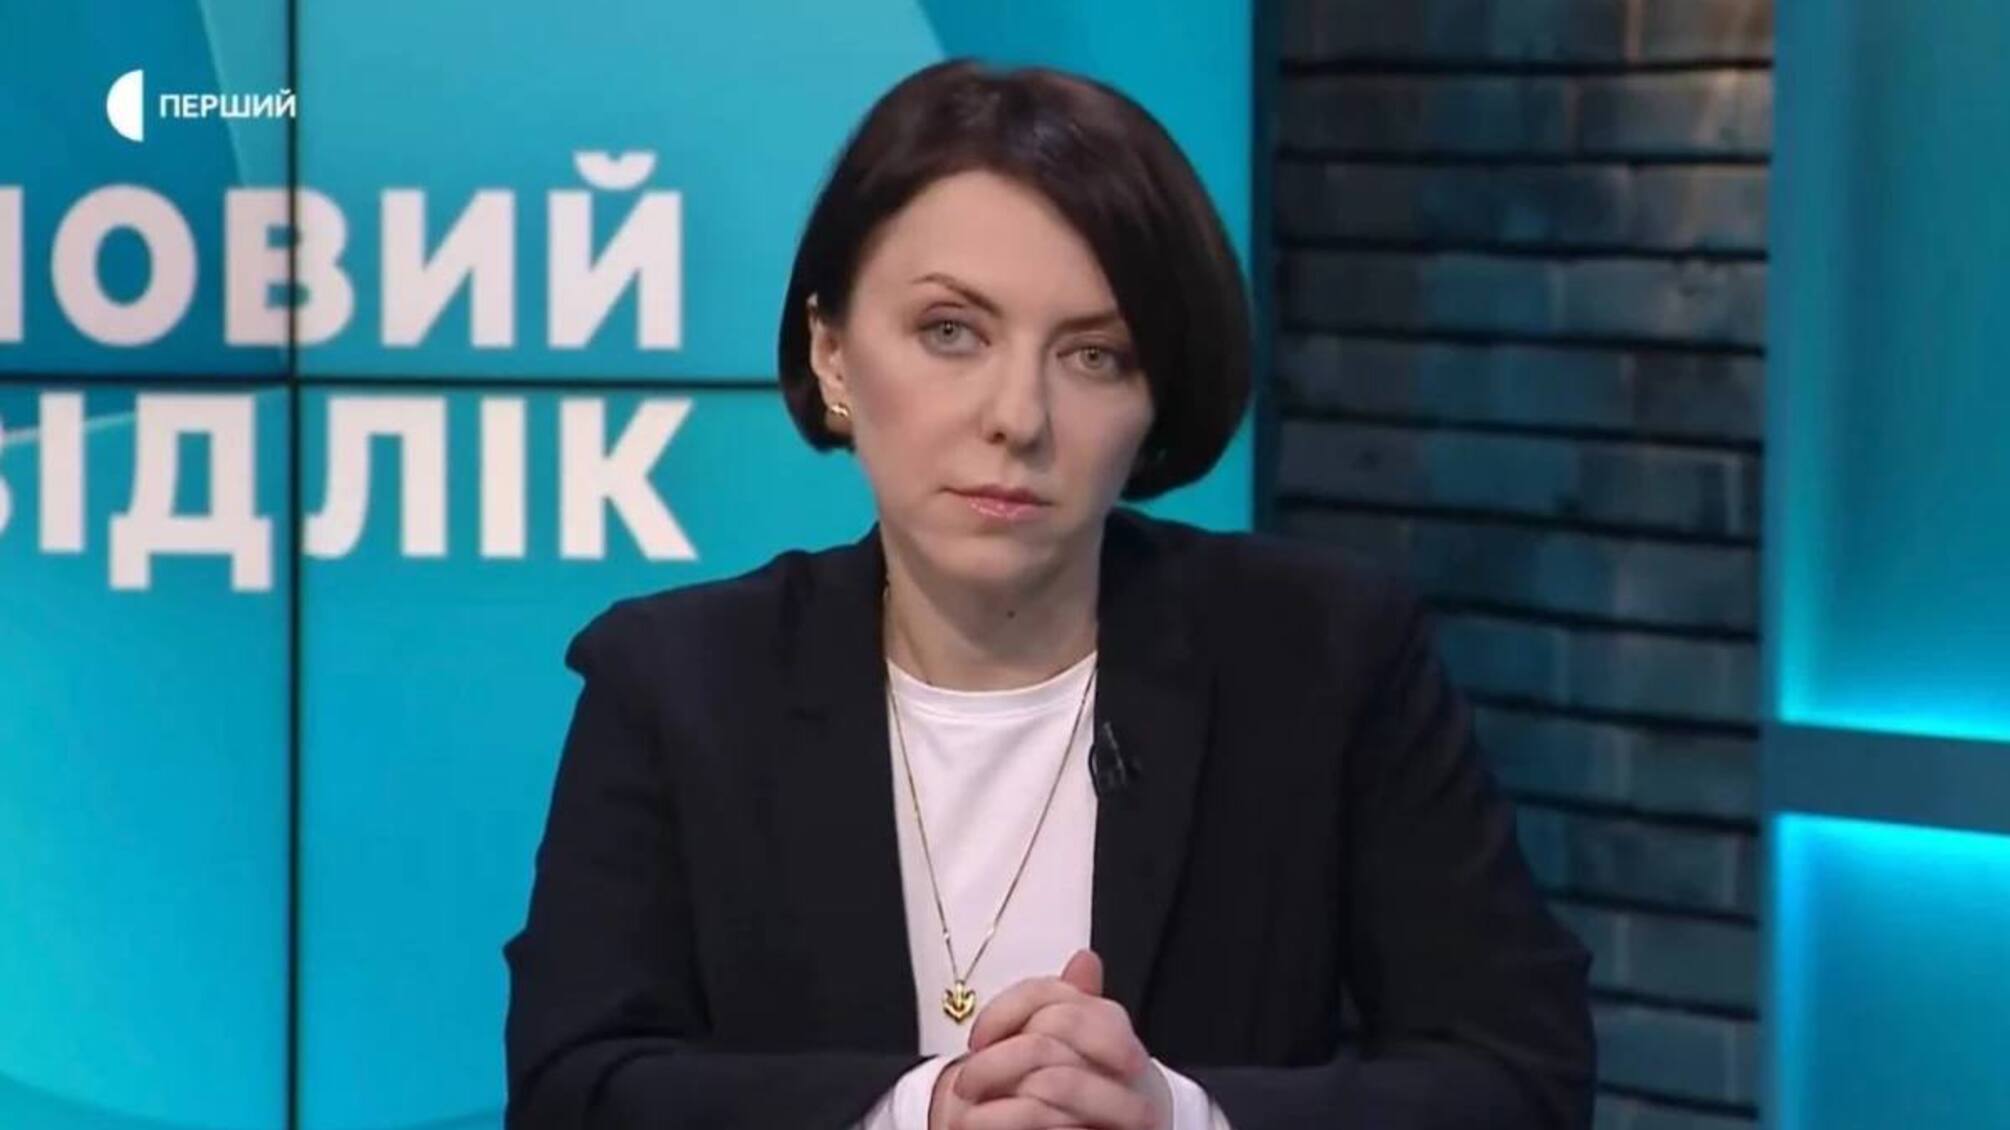 Эксзамминистра обороны Анна Маляр извинилась, что довела до слез депутат Совсун